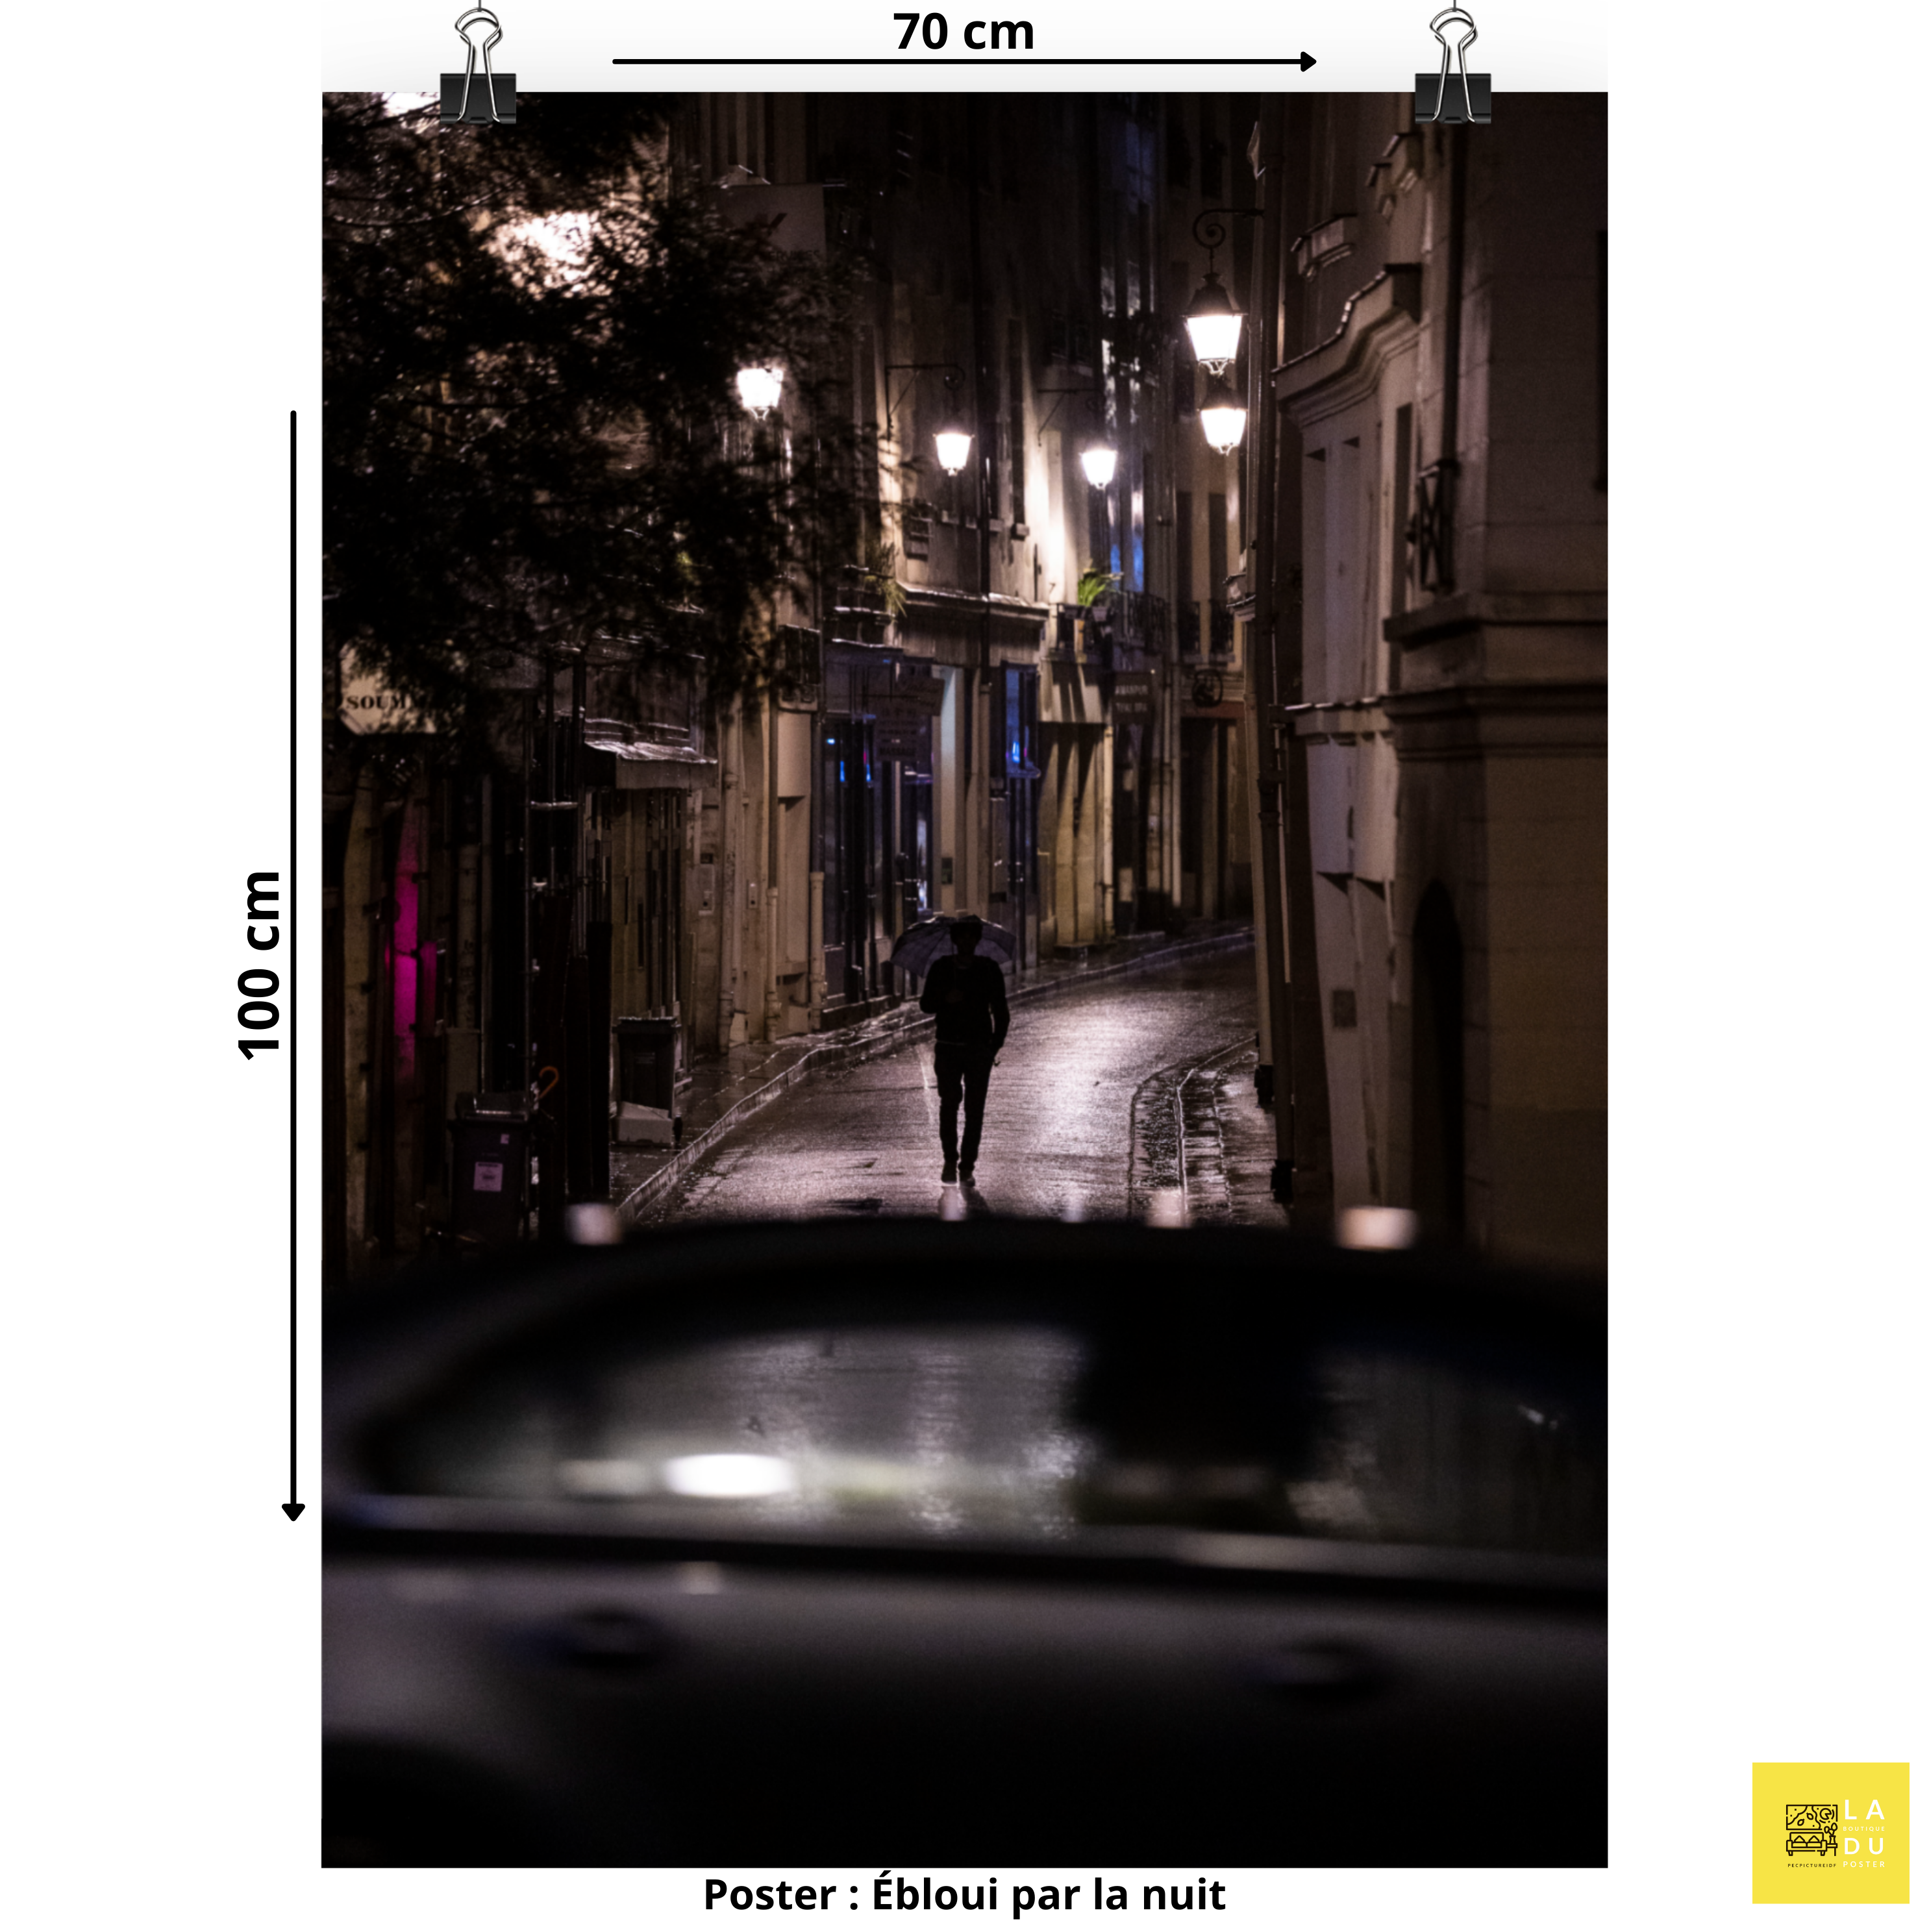 Ébloui par la nuit - Poster - La boutique du poster Français